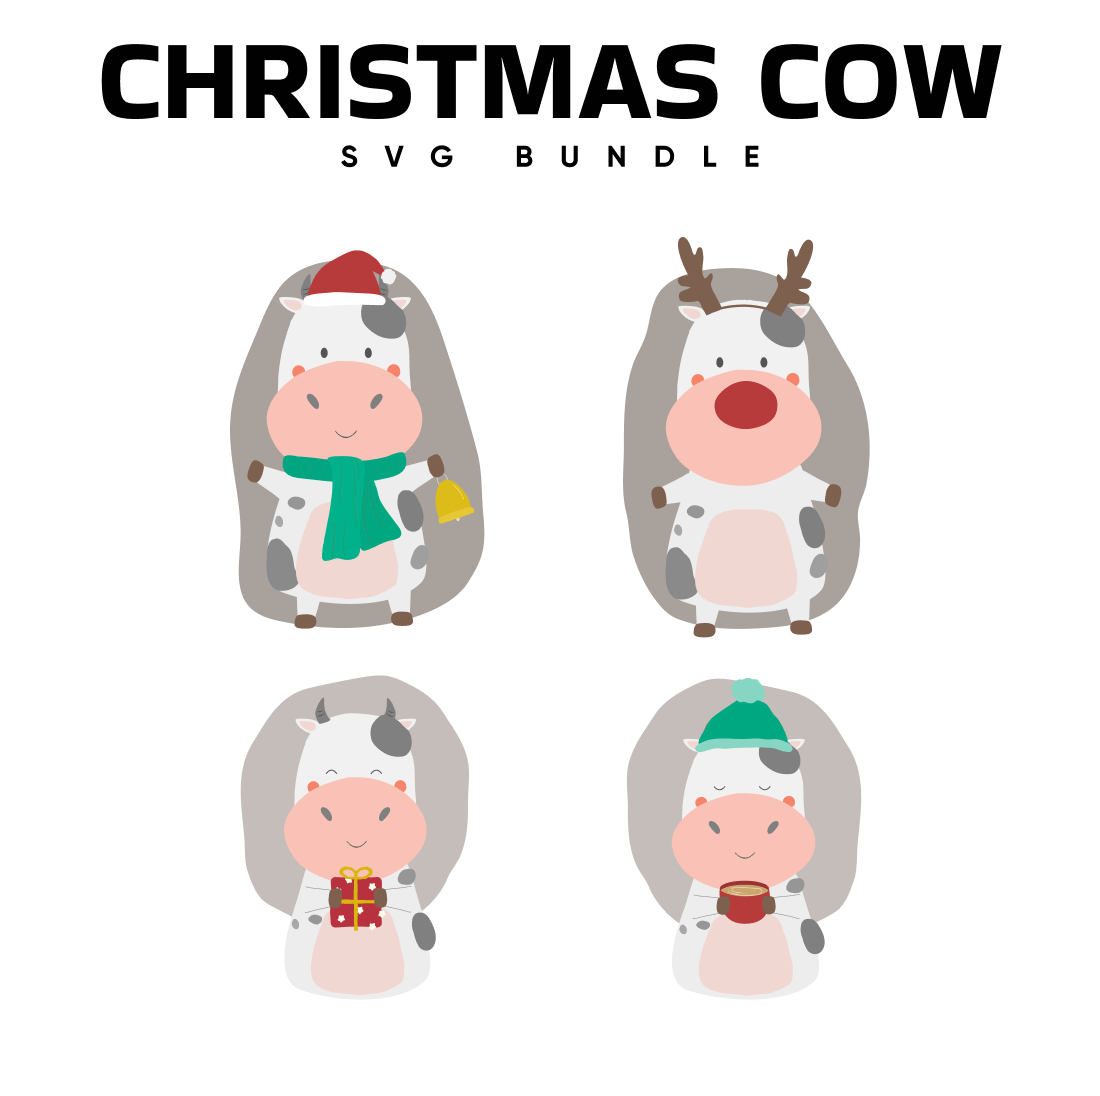 Christmas cow svg bundle.